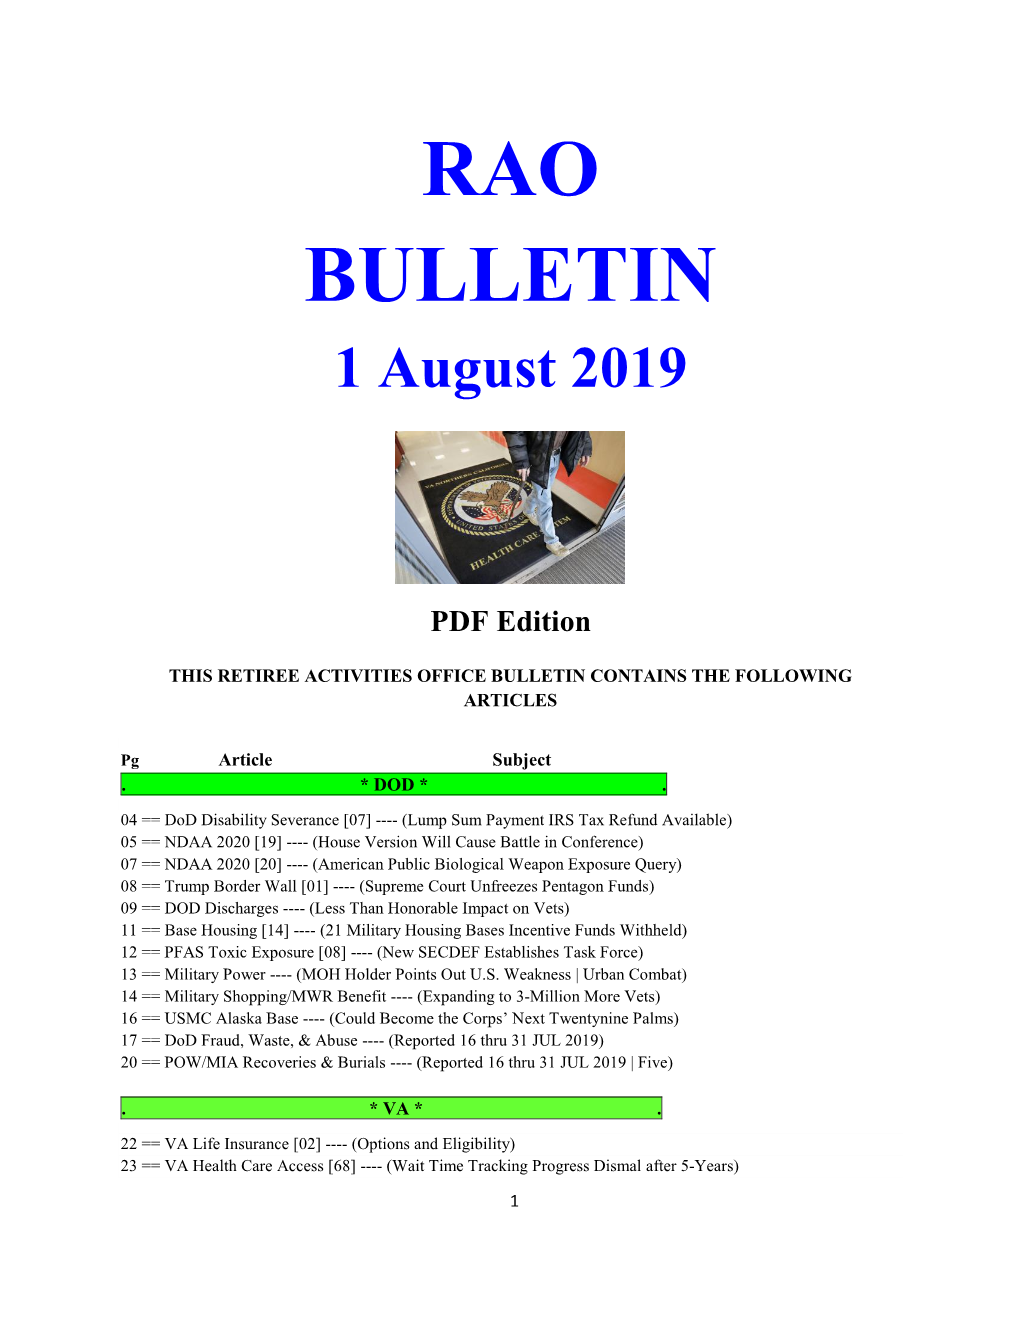 Bulletin 190801 (PDF Edition)